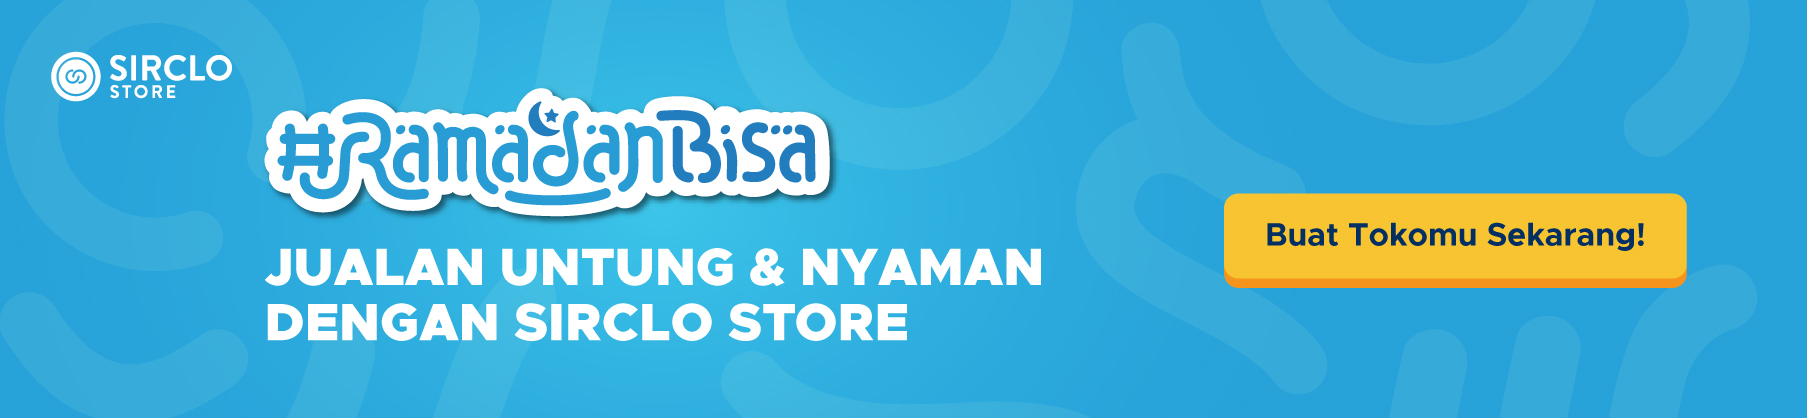 #RamadanBisa Ditraktir SIRCLO Store hingga Rp200 Ribu!